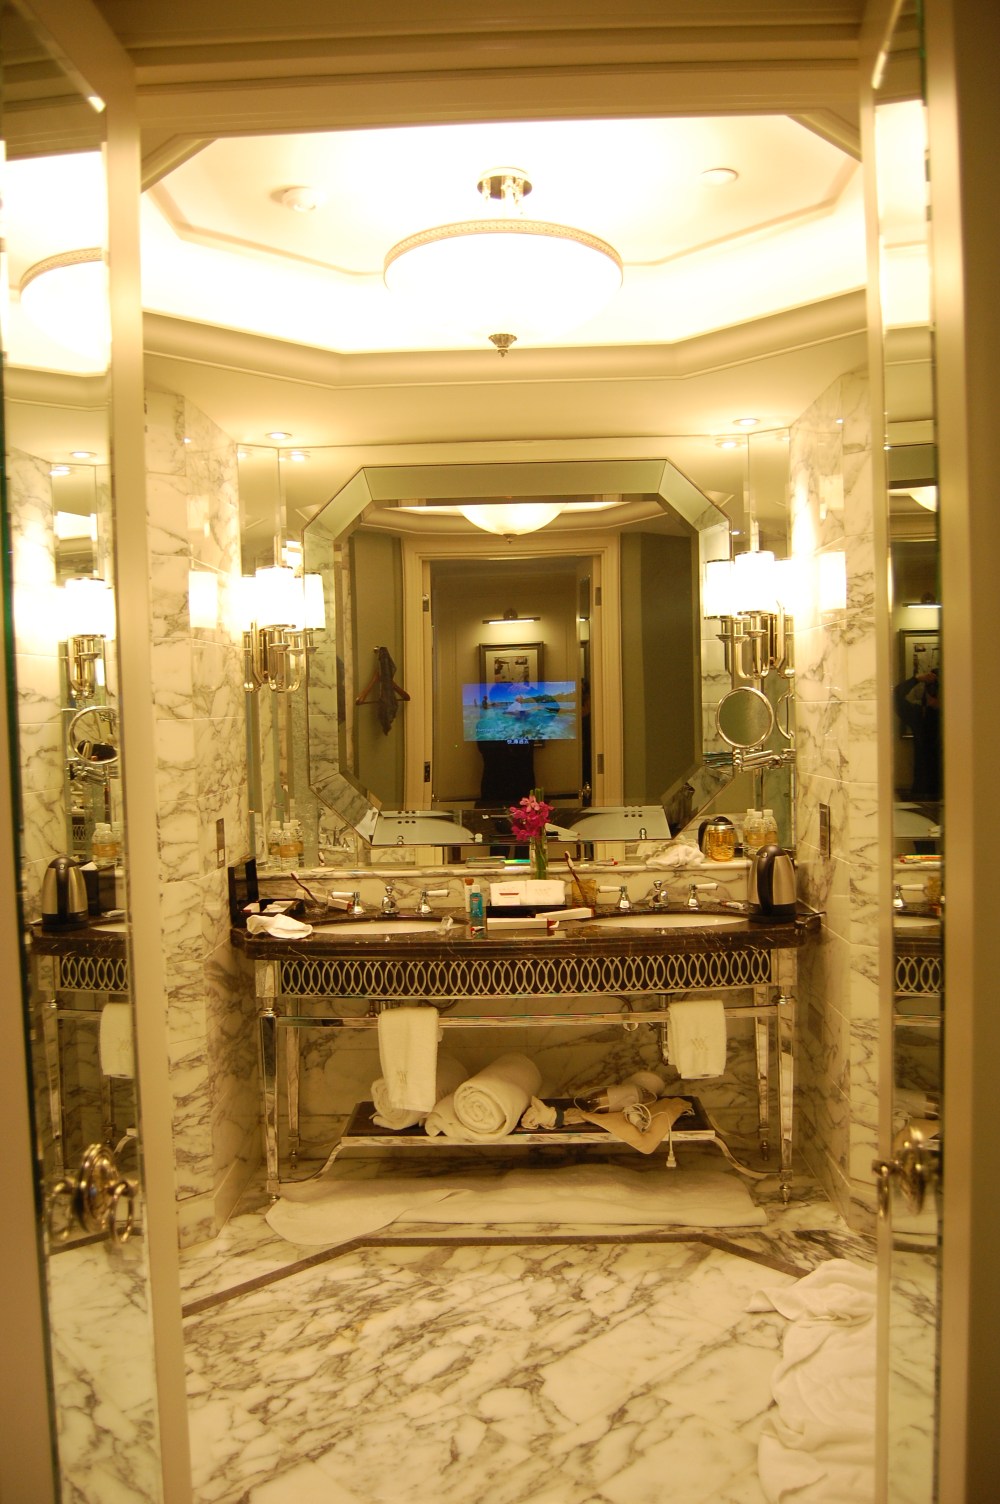 上海华尔道夫酒店(The Waldorf Astoria OnTheBund)(HBA)10.9第10页更新_DSC_0575.JPG